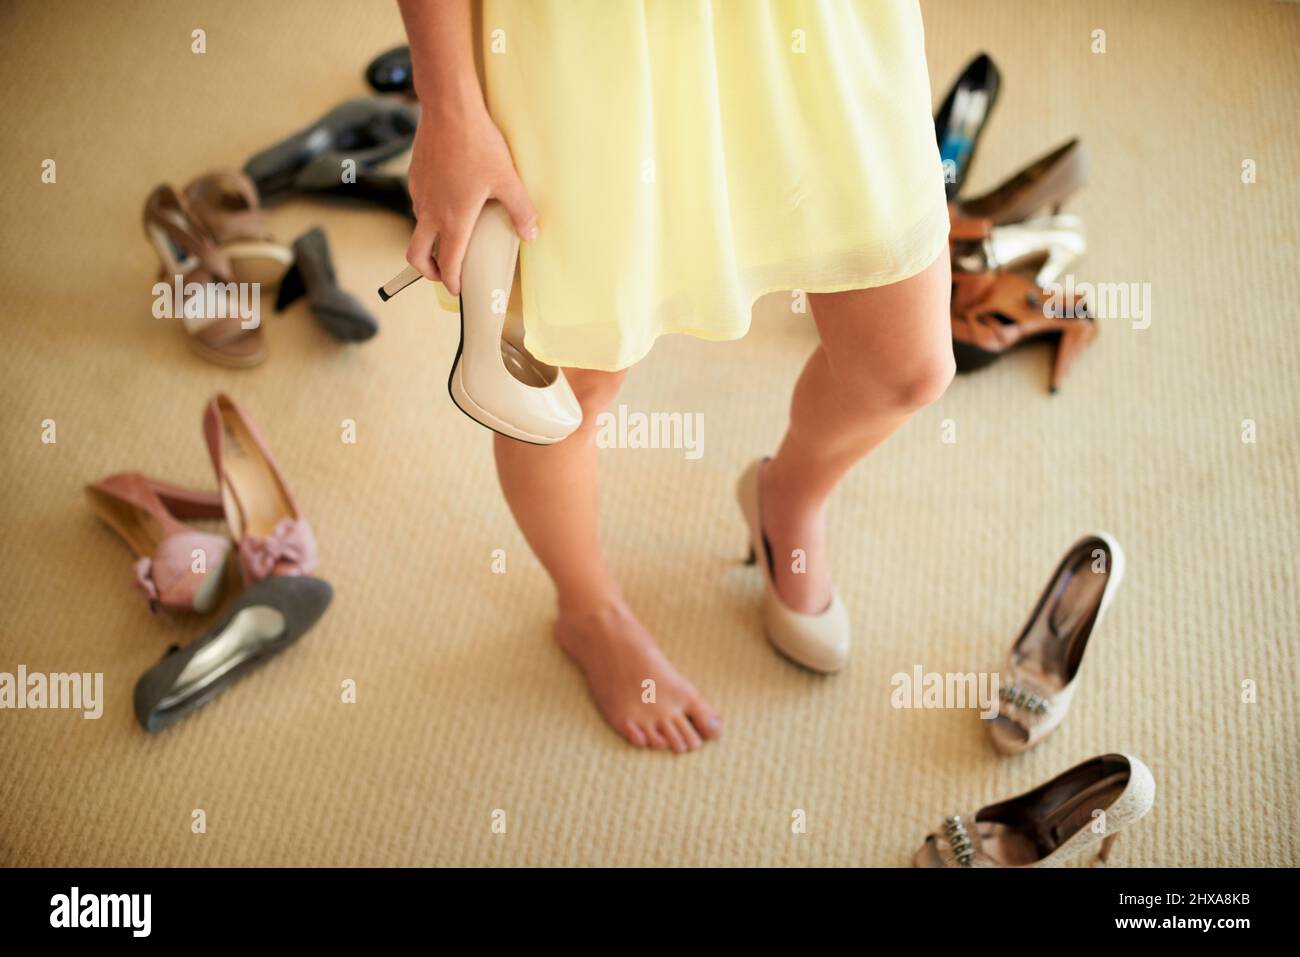 Trouver un équilibre entre style et confort. Image rognée d'une femme debout dans sa chambre entourée de chaussures. Banque D'Images